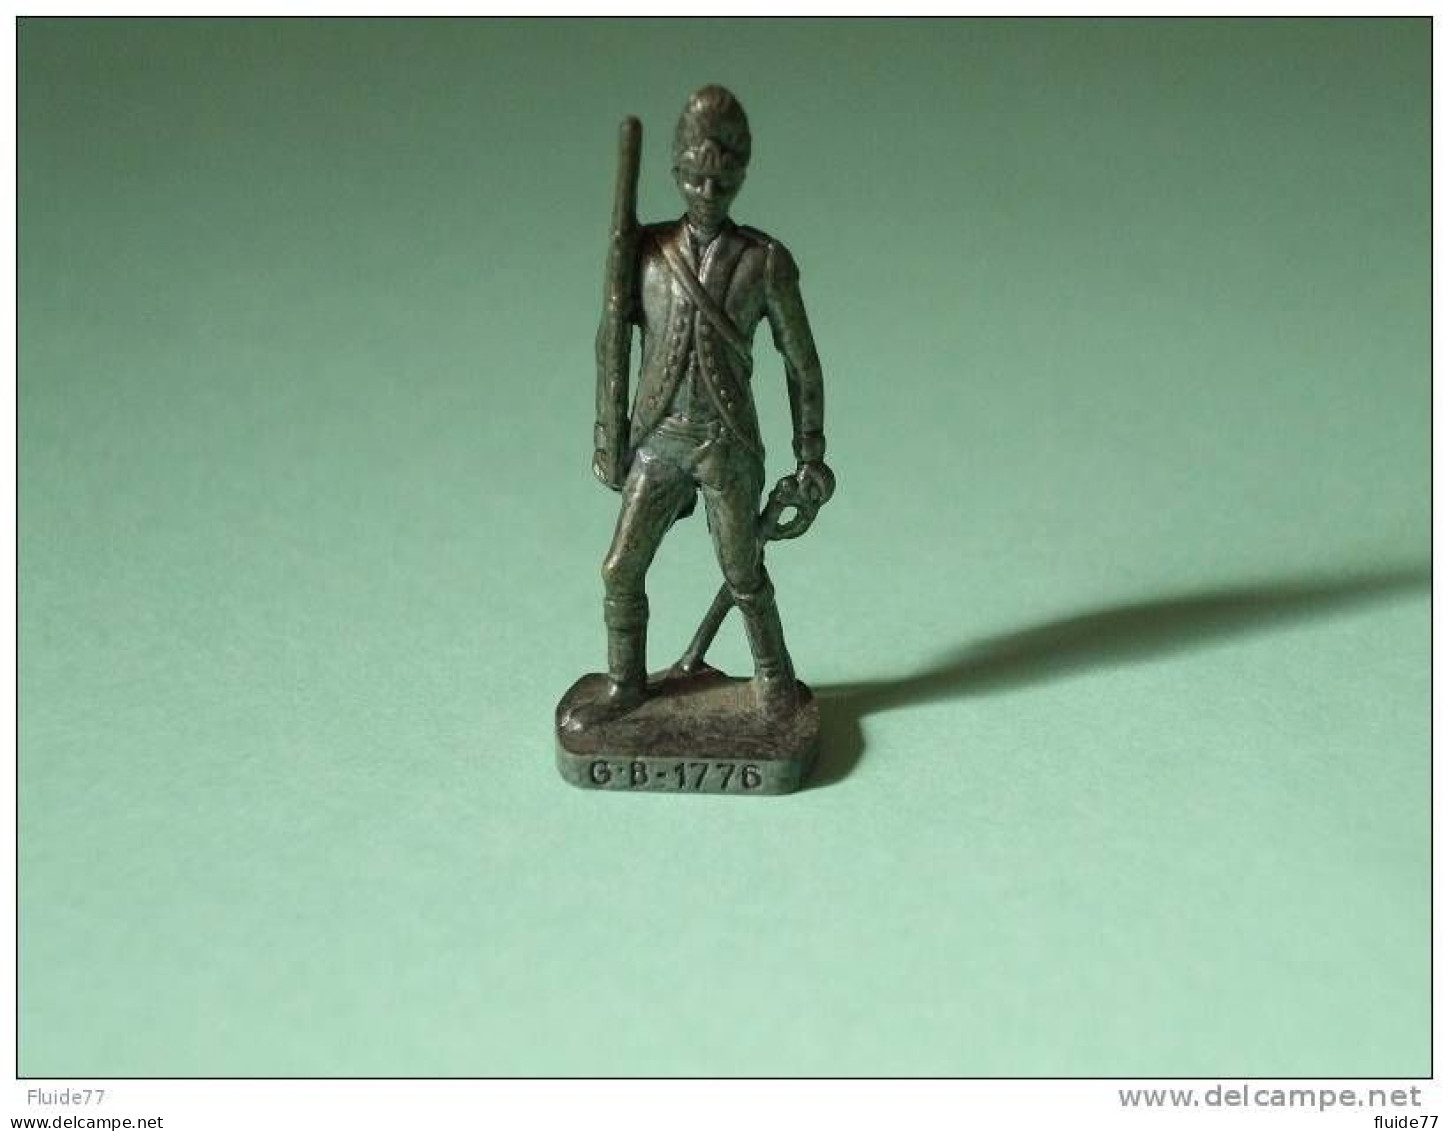 @ BRITANNIQUES De 1770 - Sergent Major  GB  1776 @ - Figurines En Métal